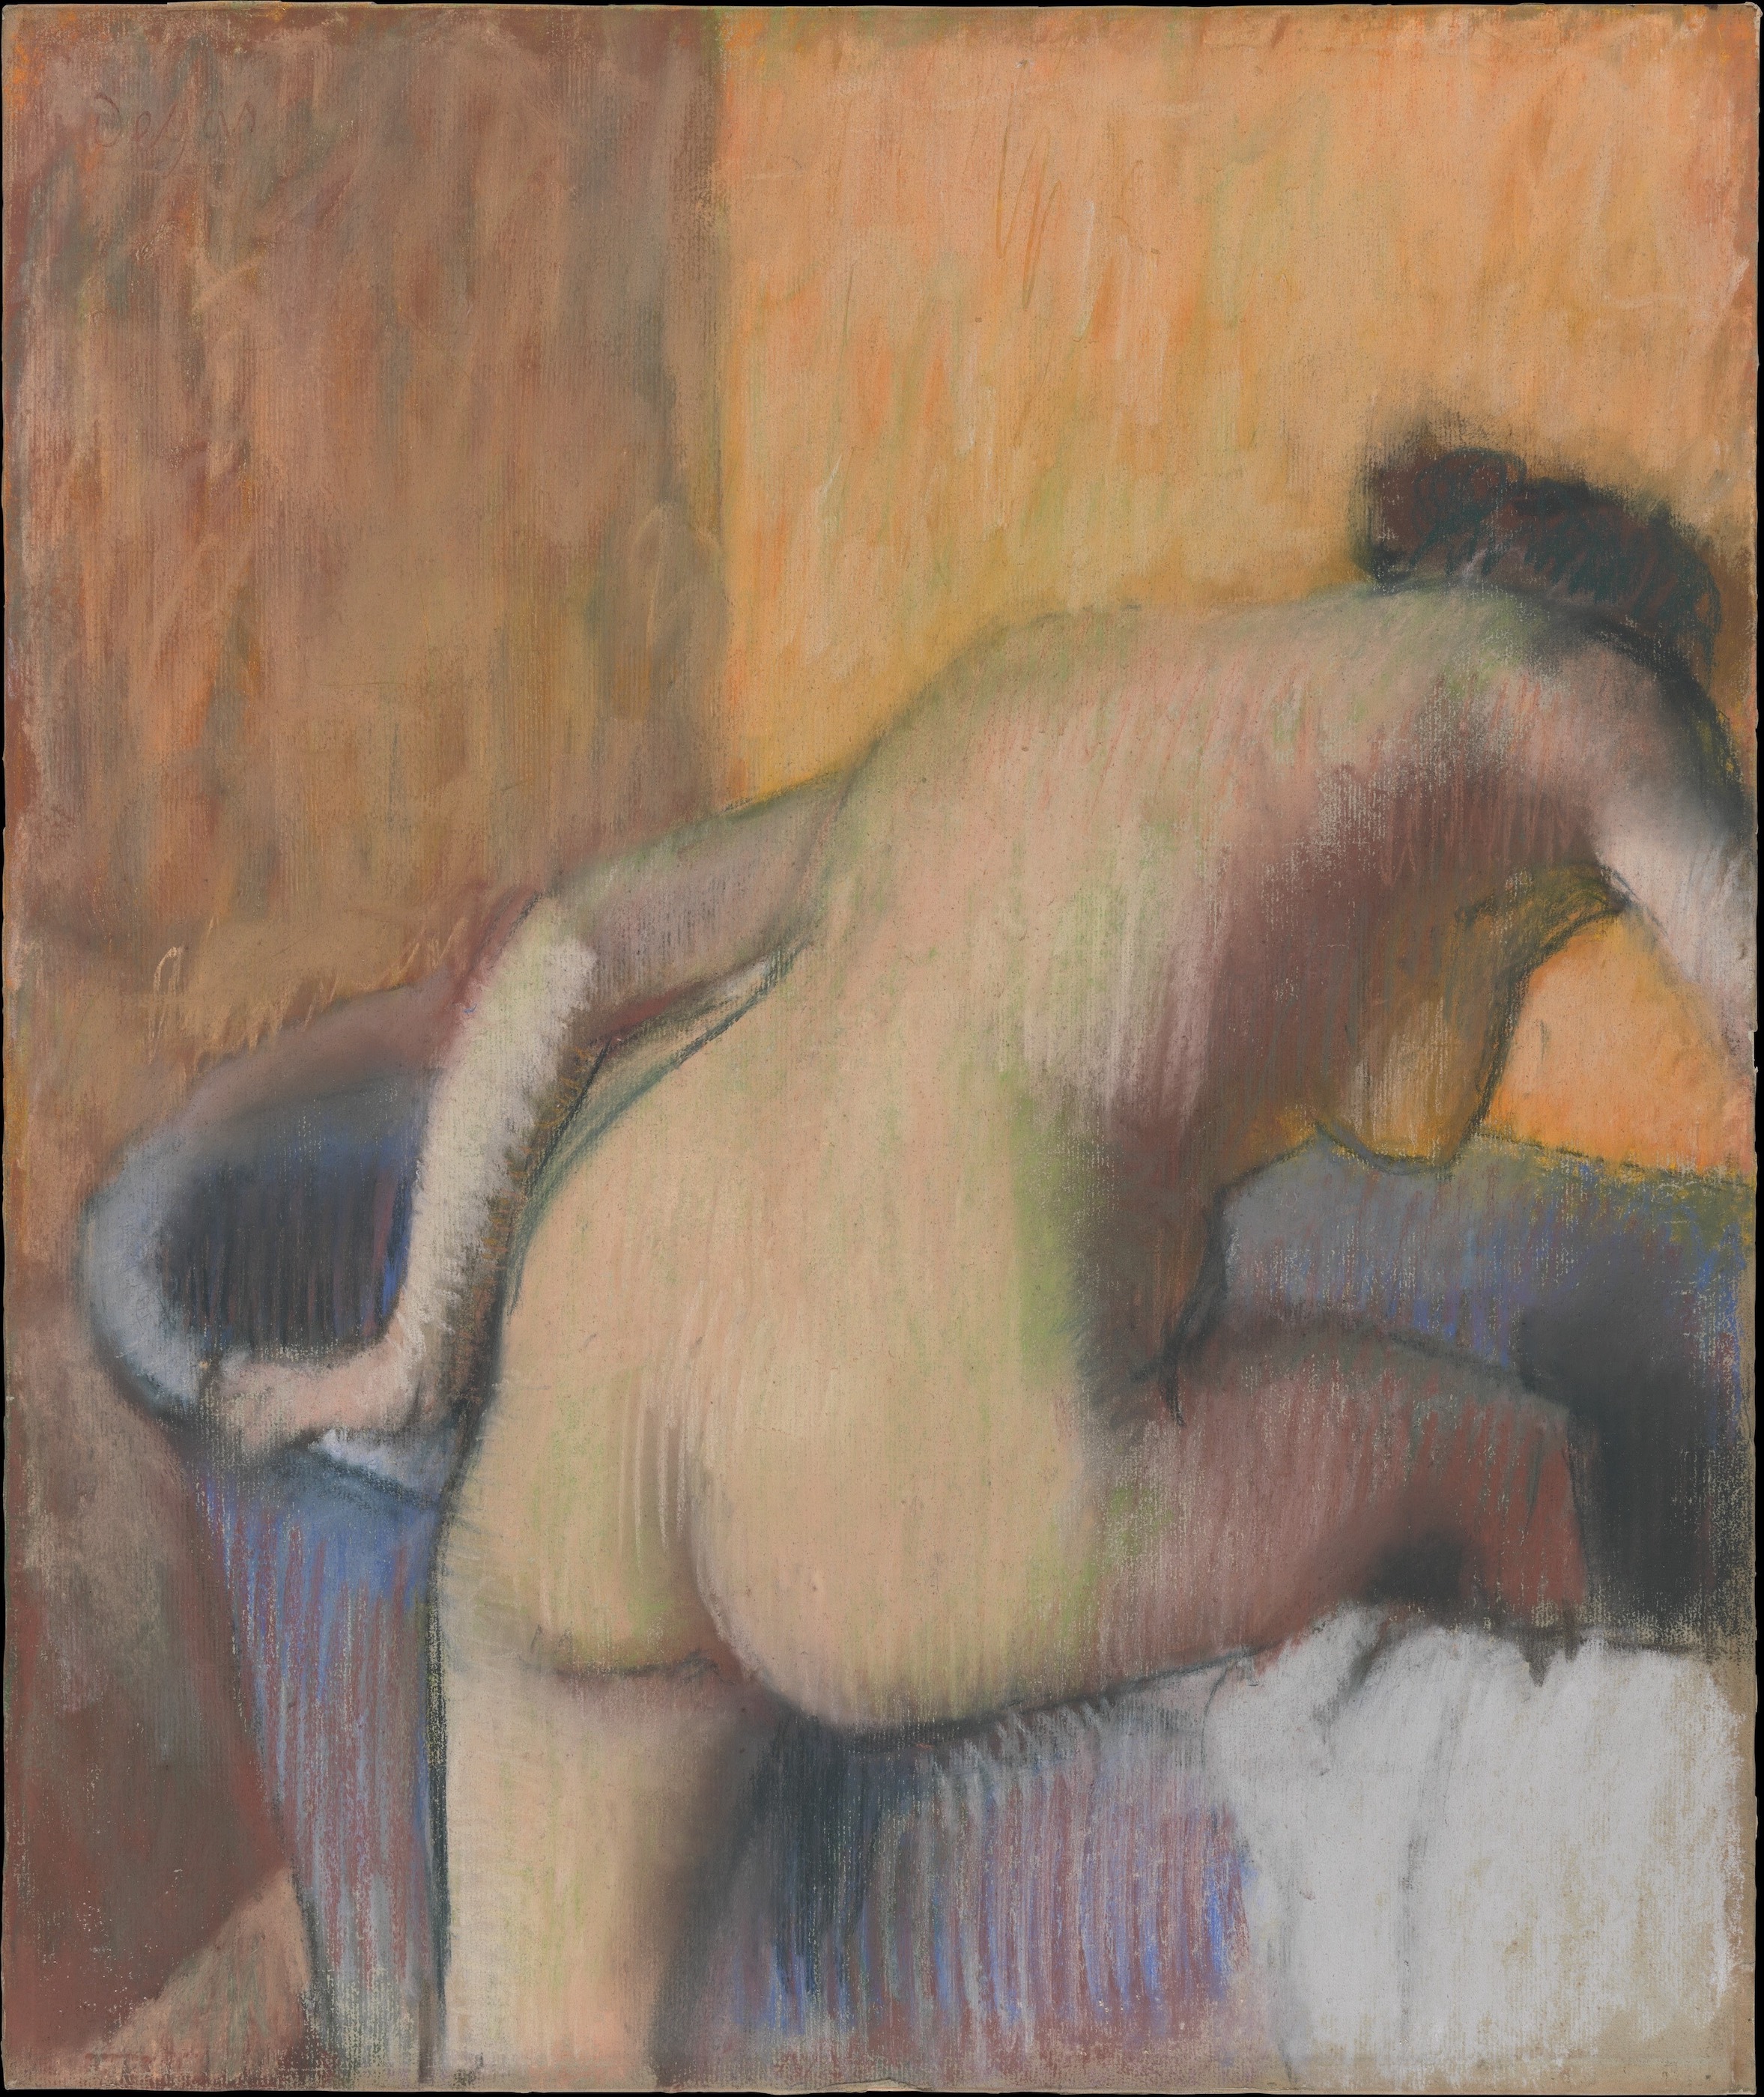 مستحمة تخطو إلى حوض استحمام by Edgar Degas - 1890 م - 55.9 × 47. 6 سم 